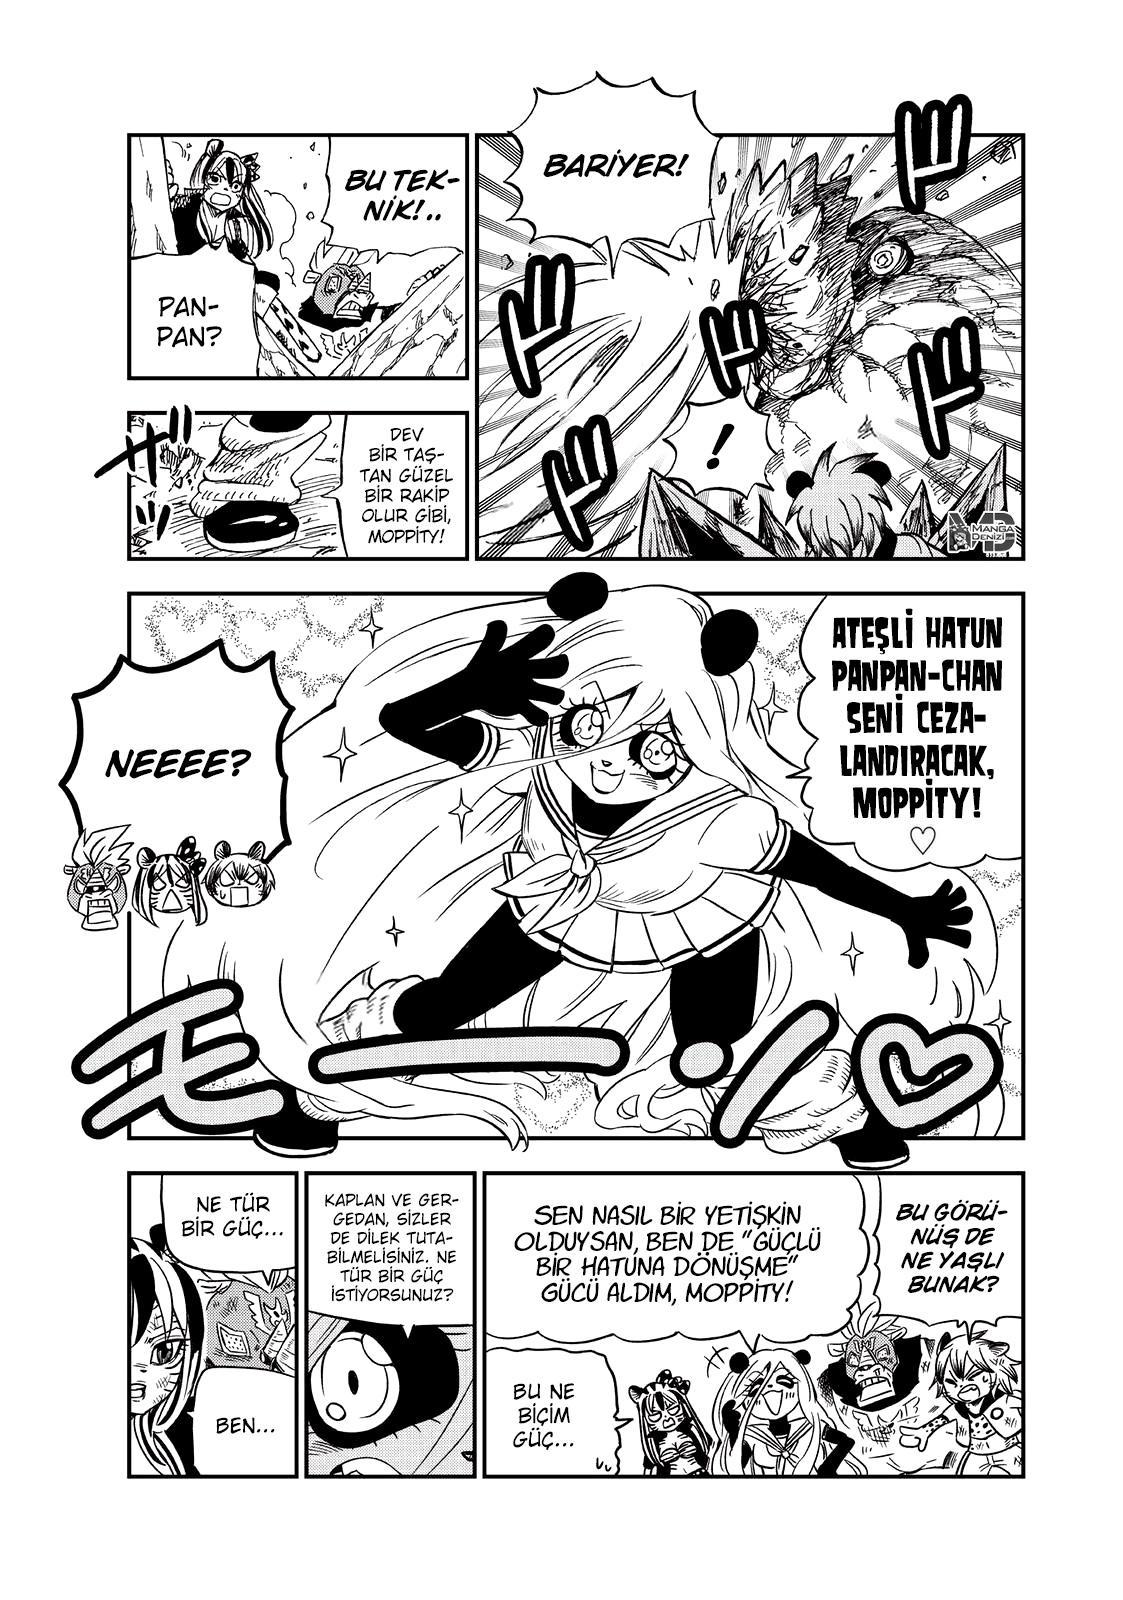 Fairy Tail: Happy's Great Adventure mangasının 74 bölümünün 4. sayfasını okuyorsunuz.